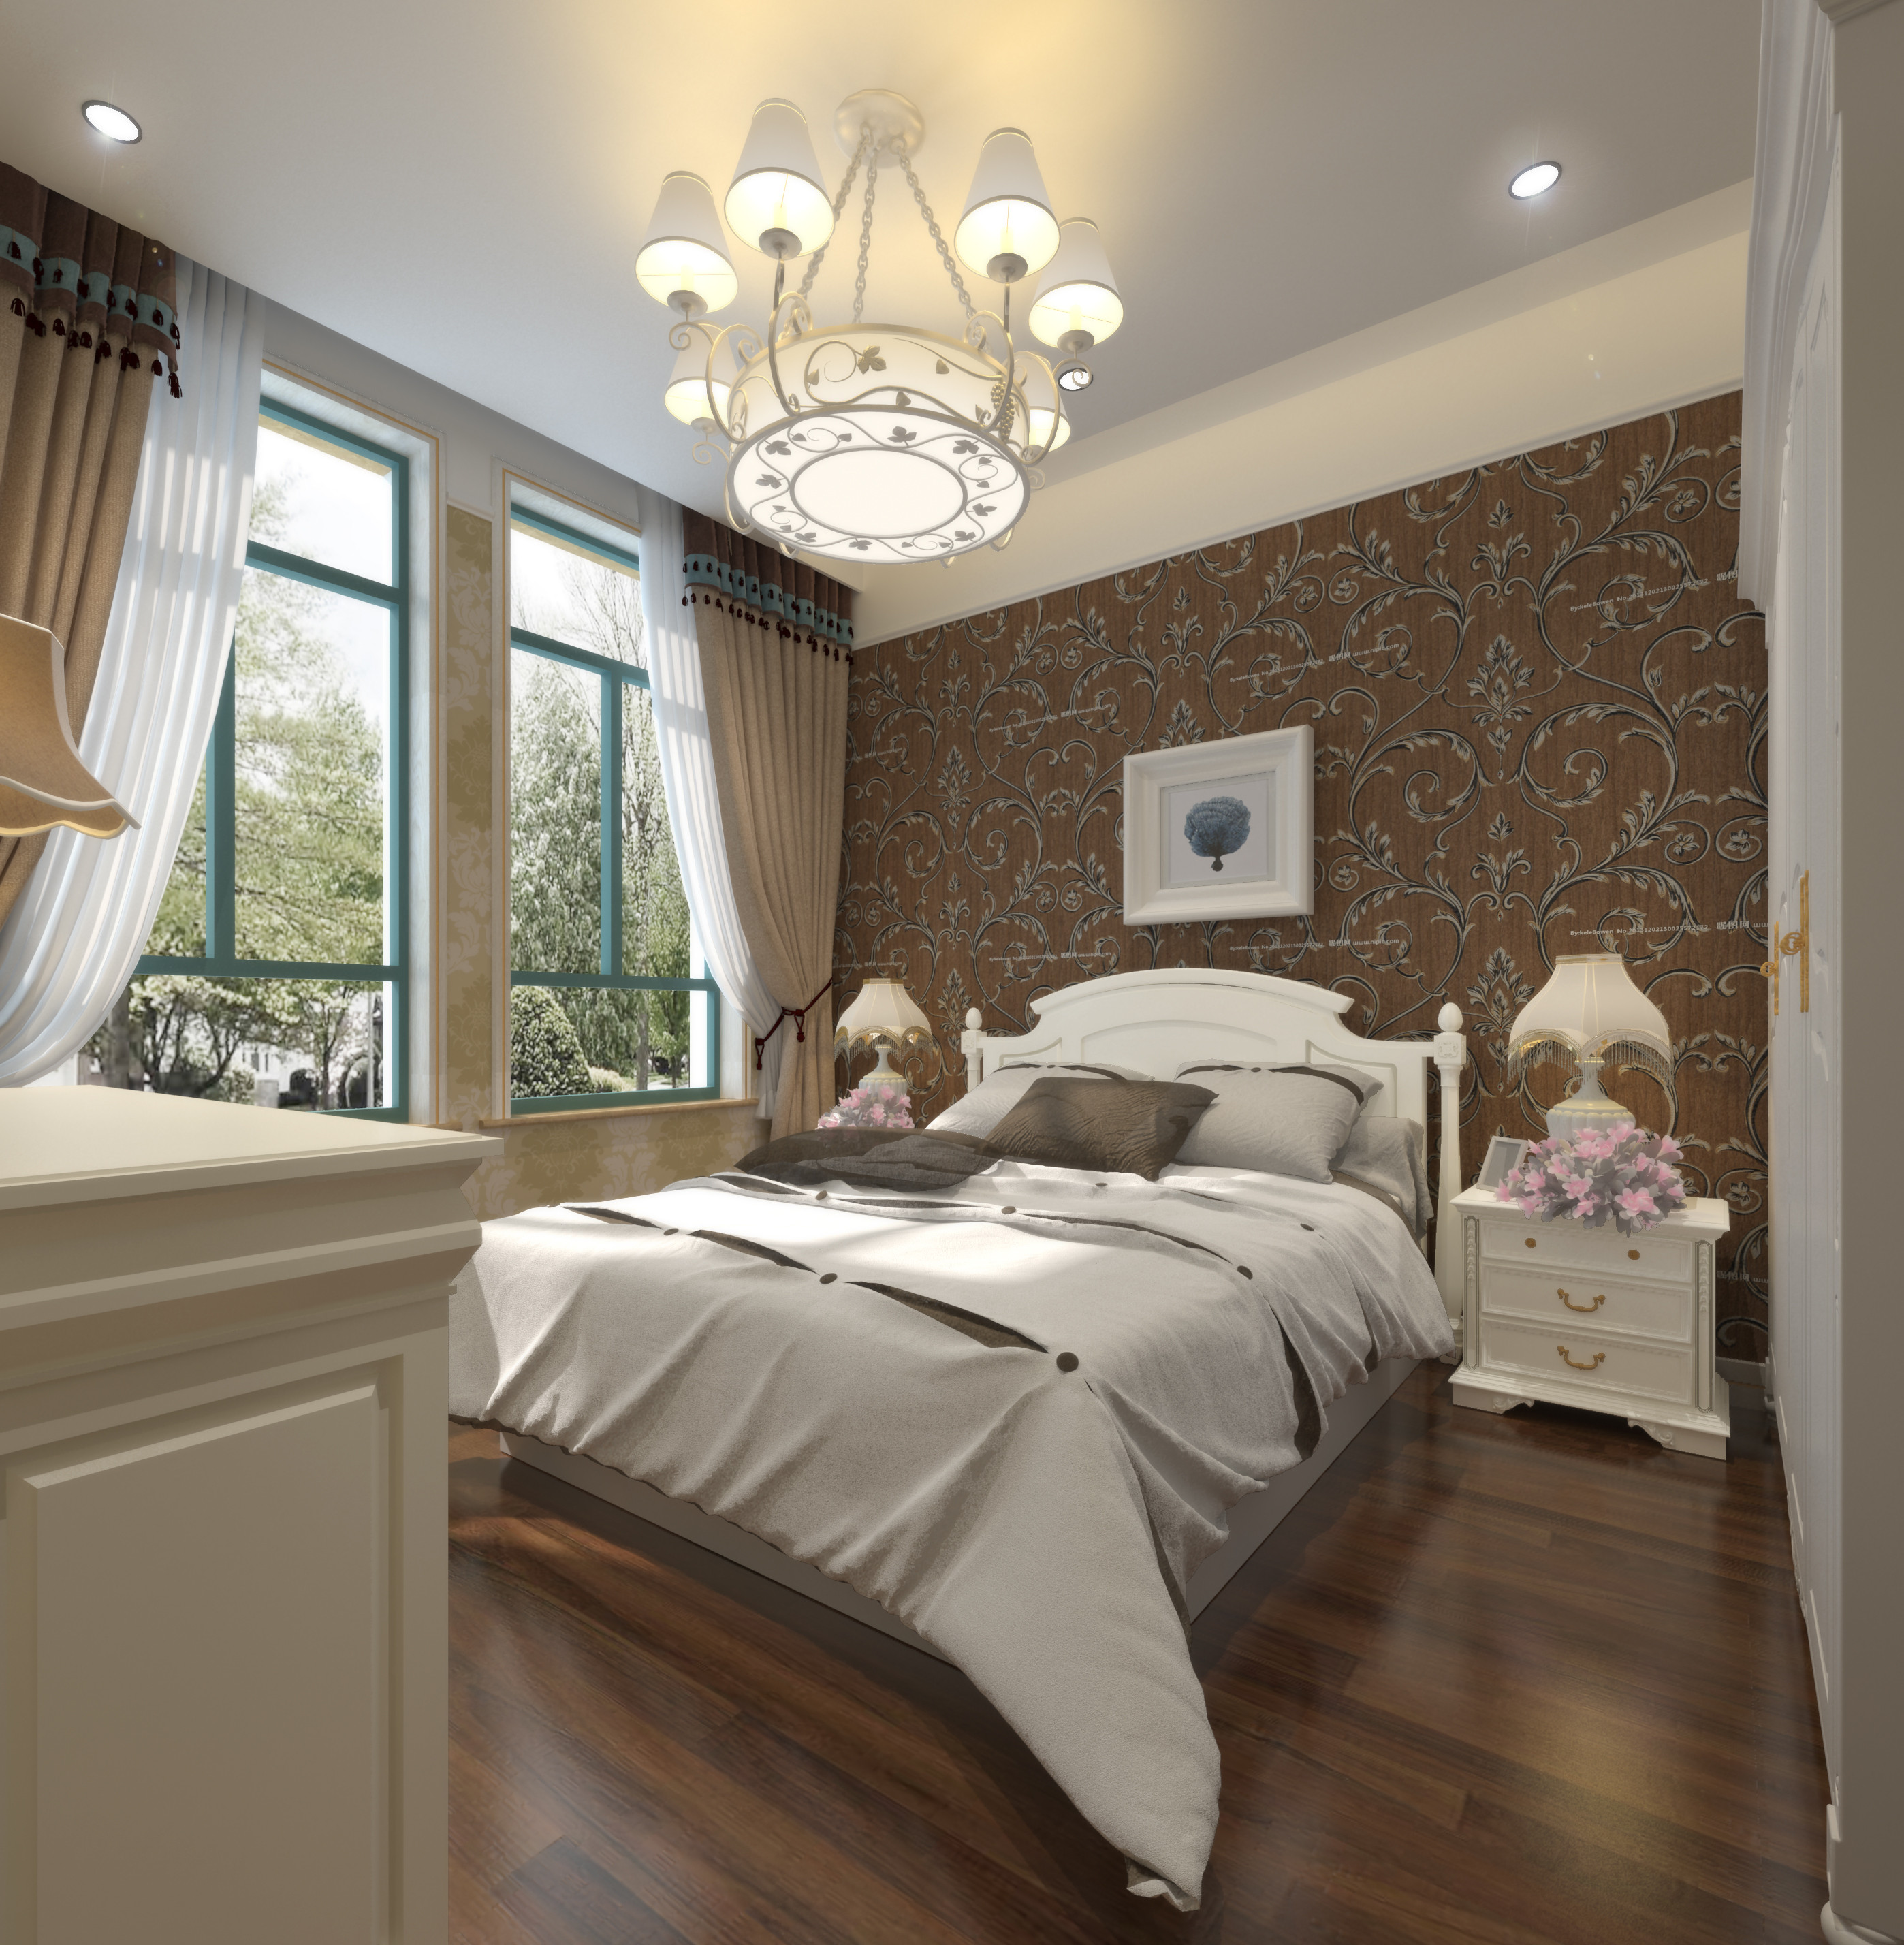 卧室: 墙面用壁纸装饰,地面浅木色地板,配上简约欧式风格衣柜和床